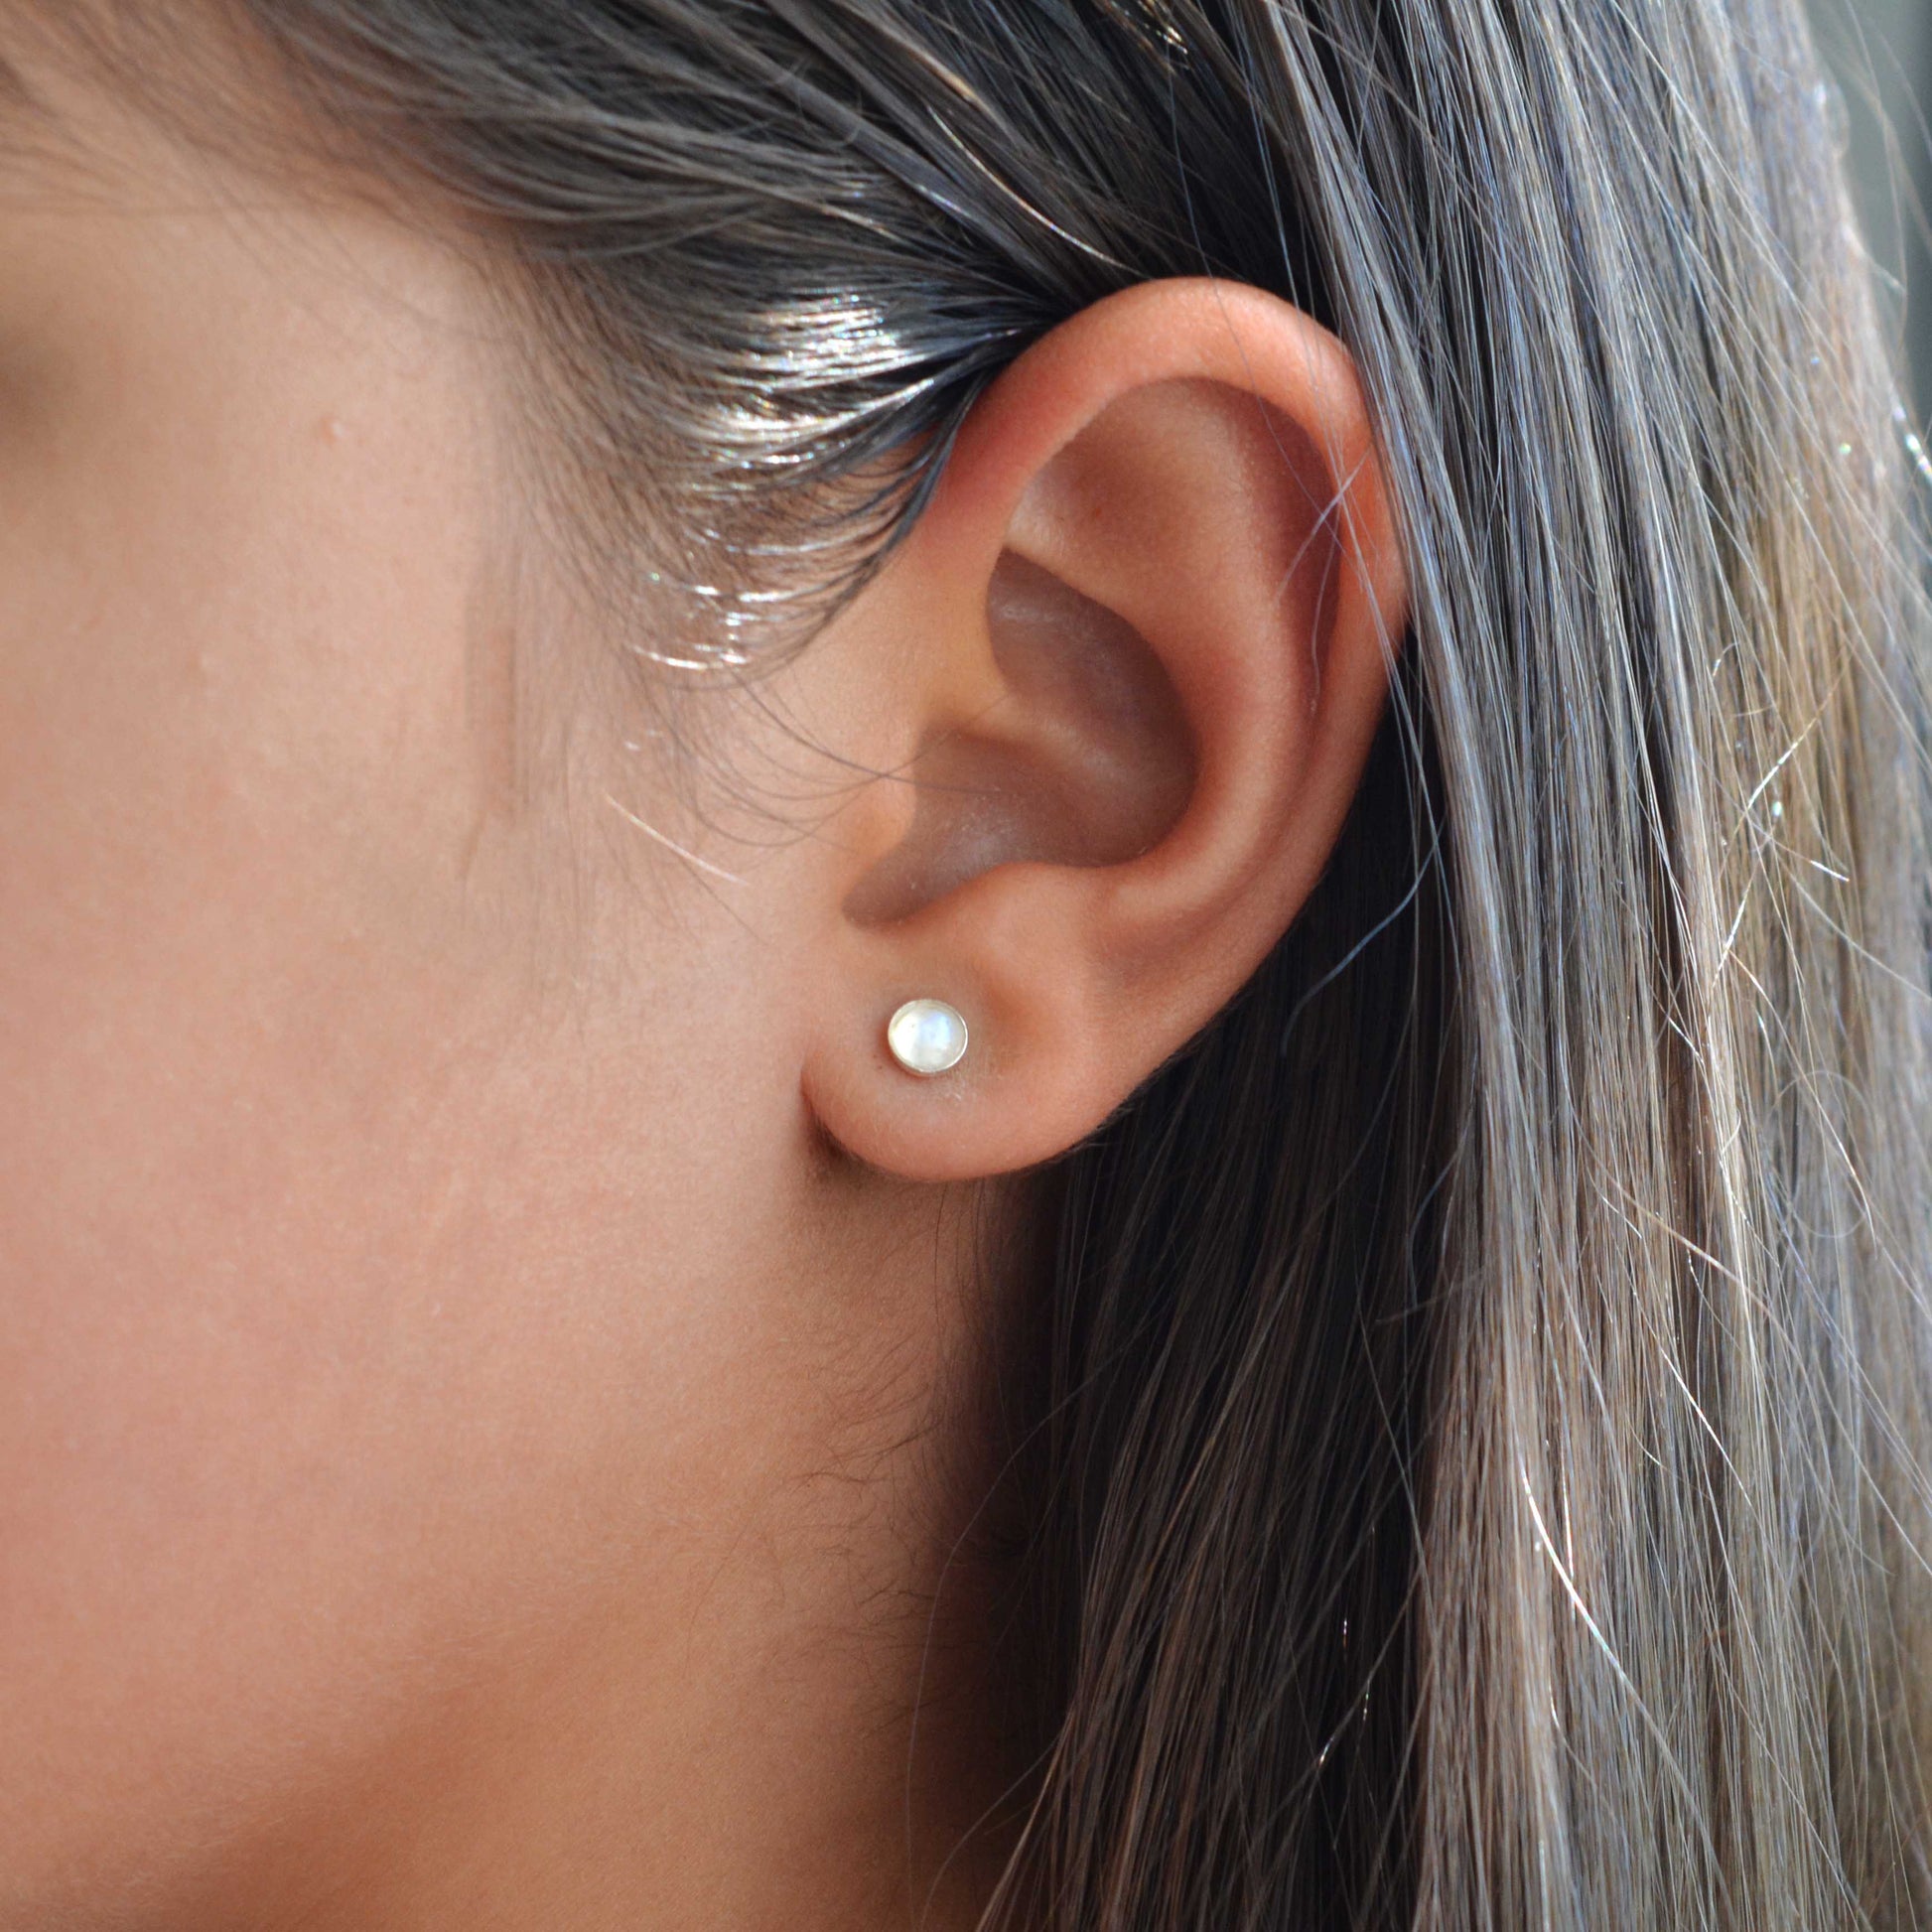 dainty earrings